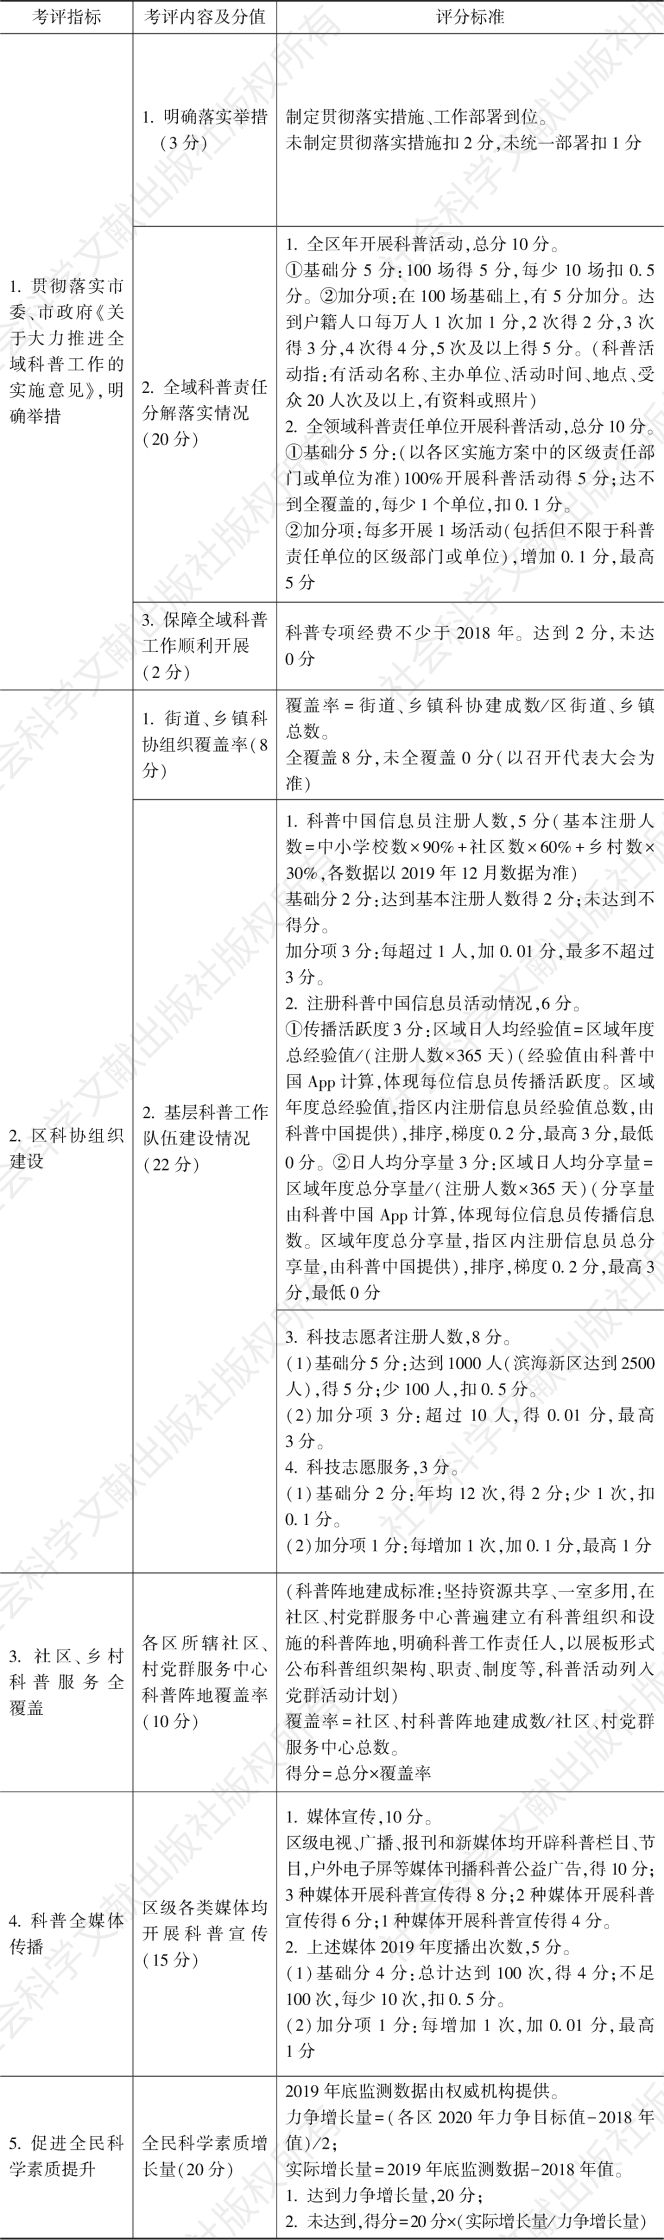 表2 天津全域科普区级考核指标